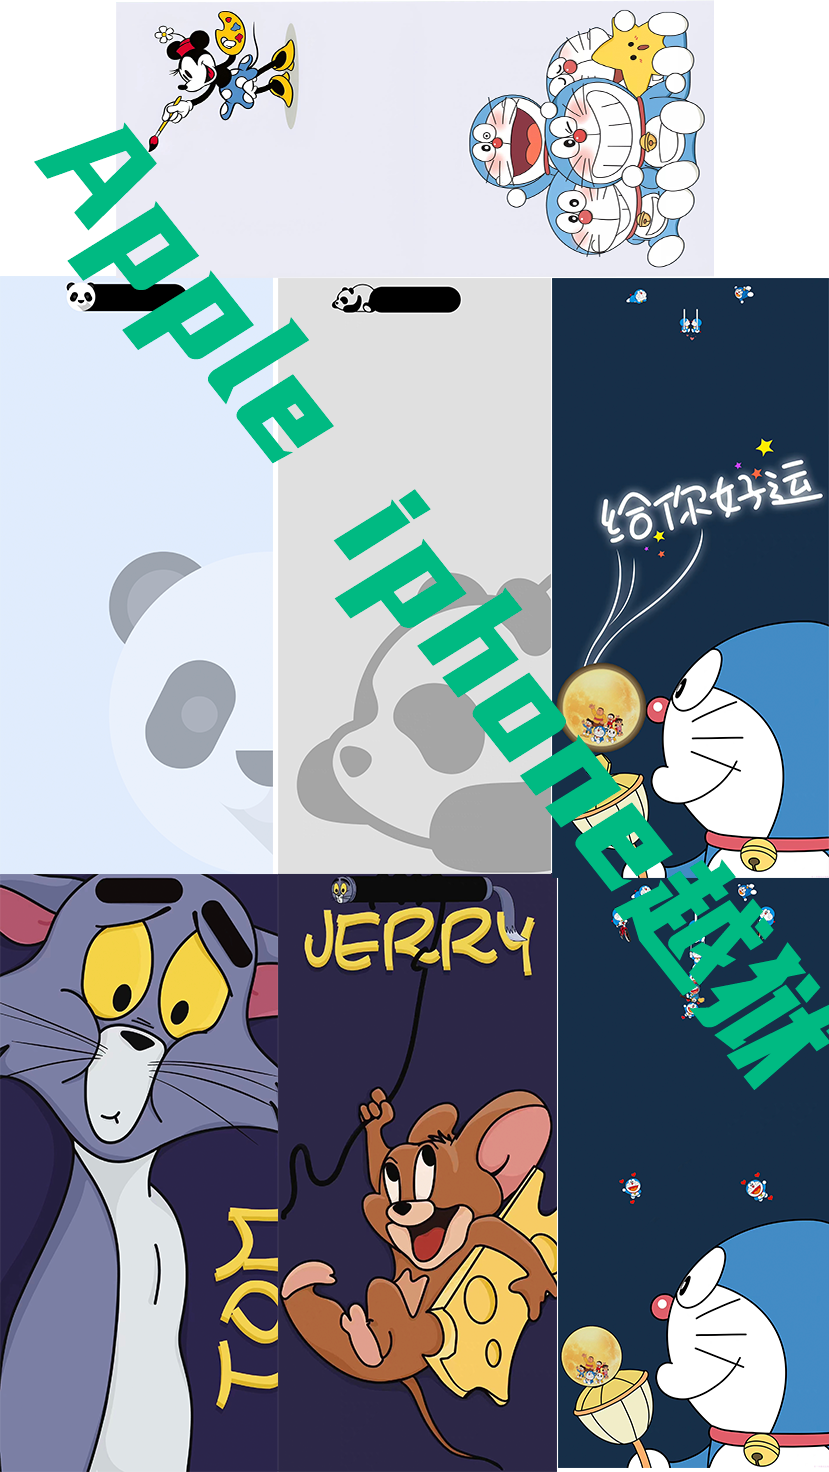 多啦A梦 Panda Tom Jerry猫和老鼠系列超高清壁纸原图灵动岛iPhone14 Pro Max药丸居中打孔